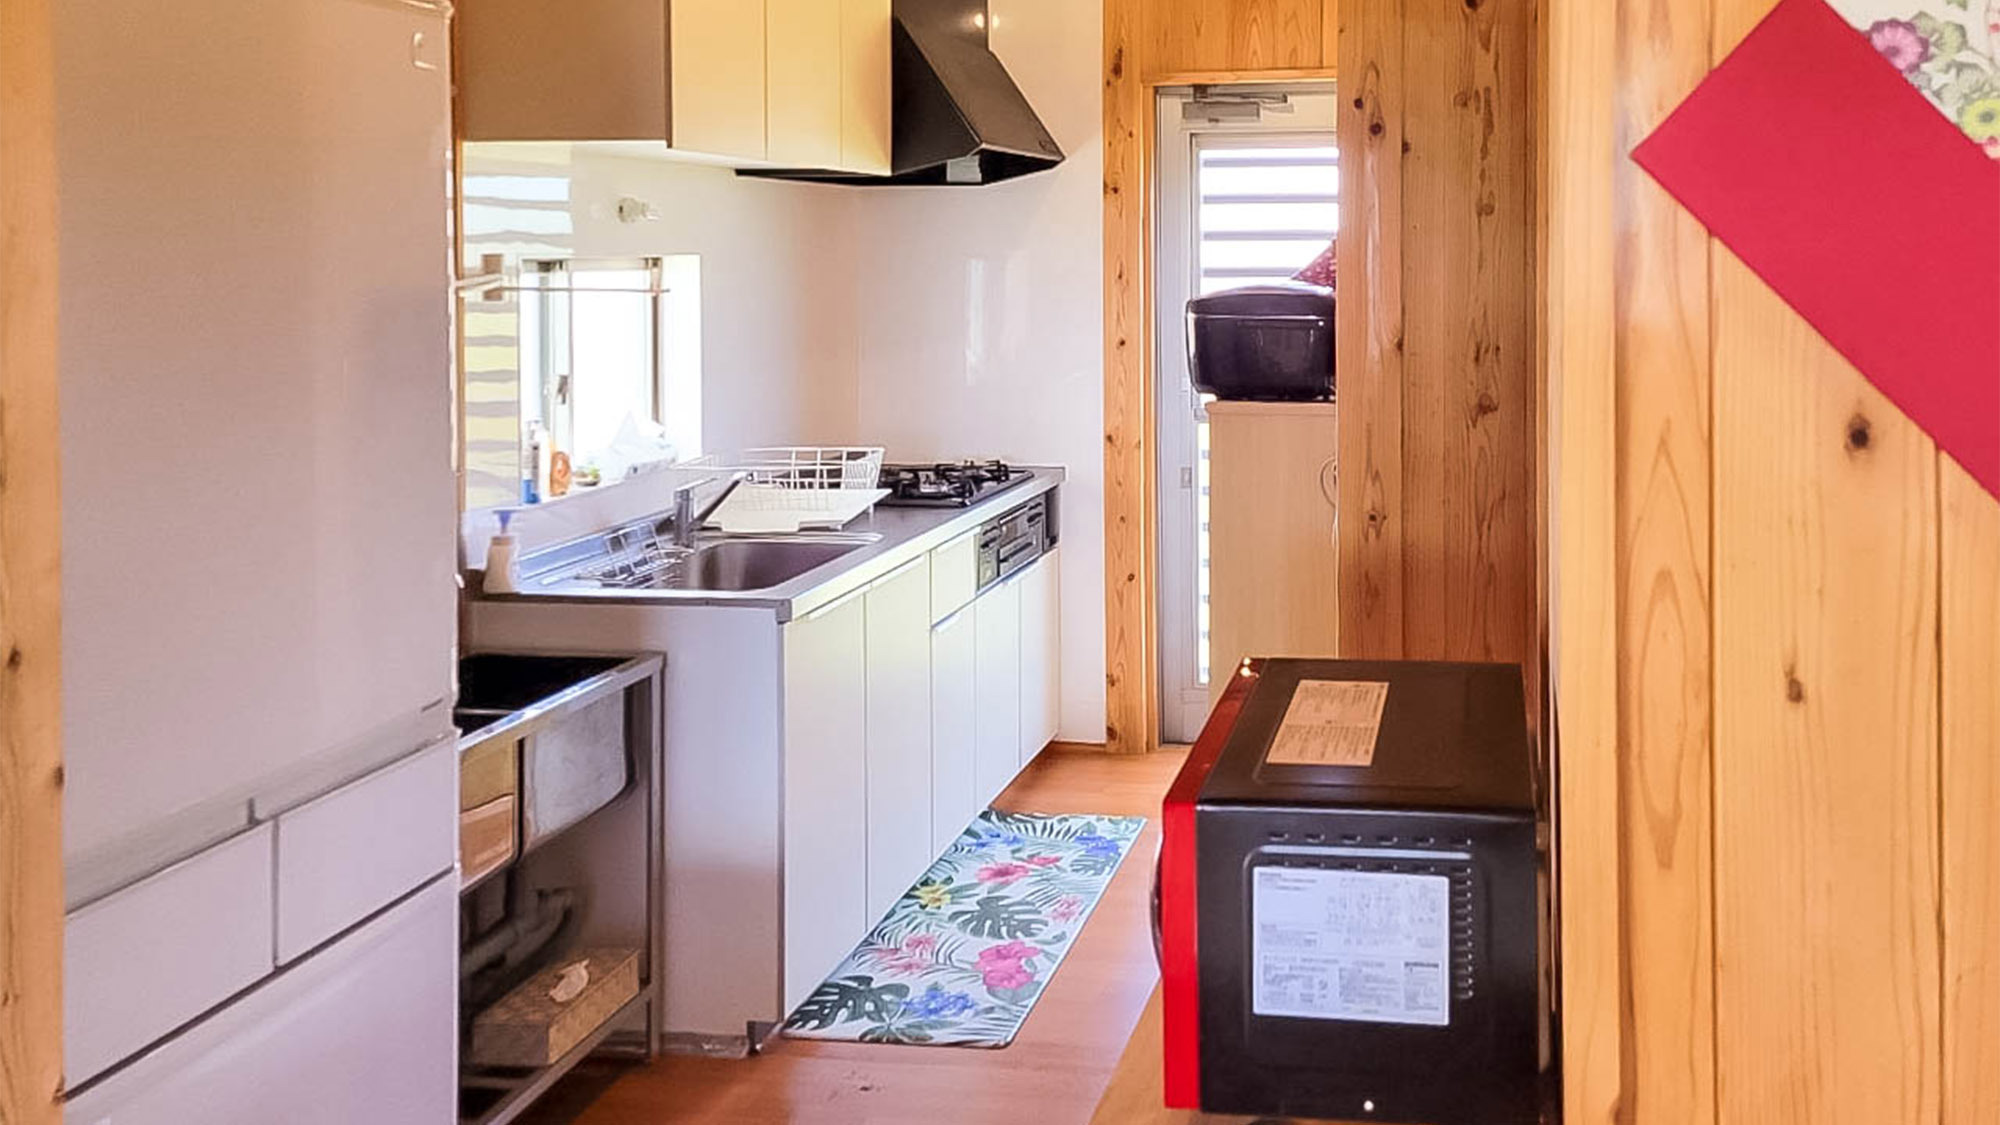 ・〈ちゅうり棟〉キッチンスペースには冷蔵庫や電子レンジなどの家電も充実